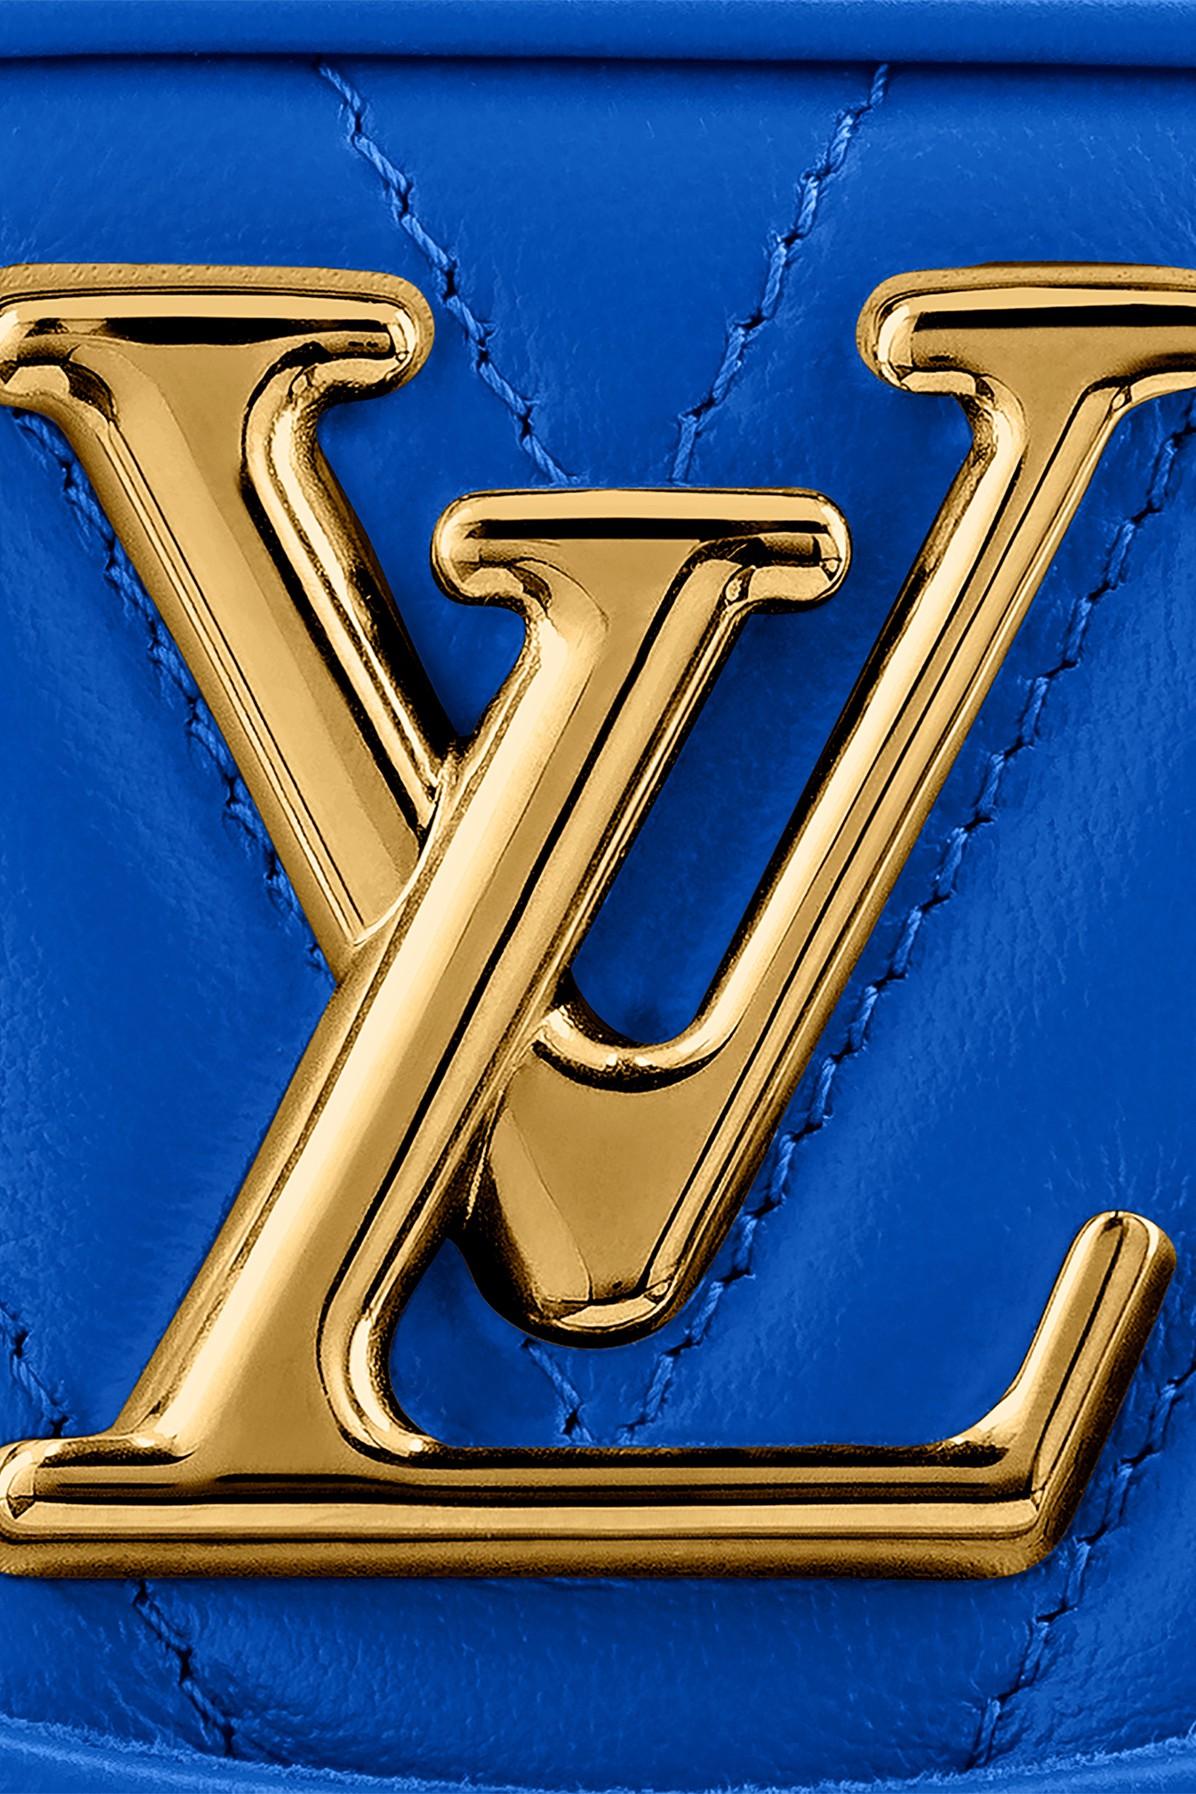 Authenticated Used Louis Vuitton LOUIS VUITTON Epi New Wave Camera Bag  Shoulder LV Light Blue M55329 